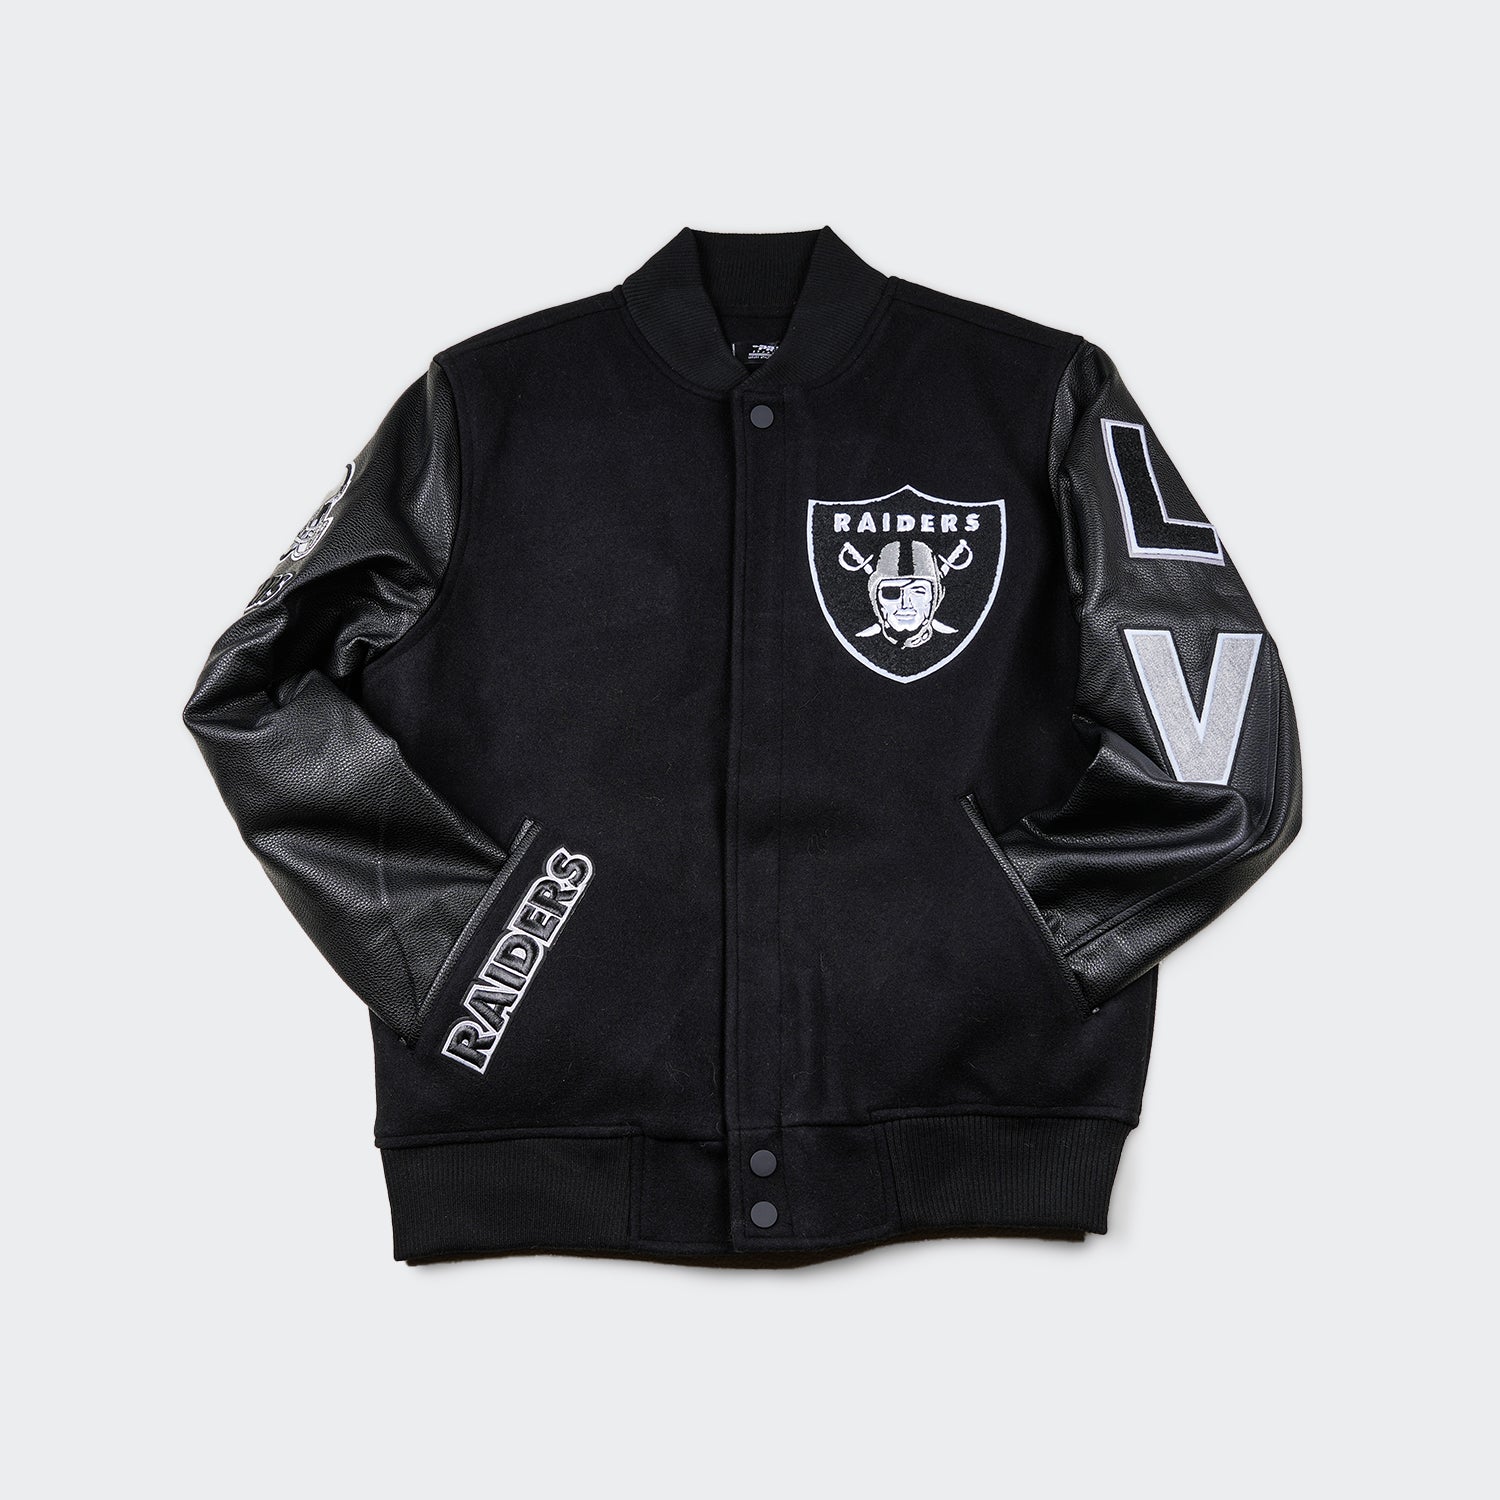 Buy Mens Brown Varsity Jacket With Black Leather Sleeves Online in